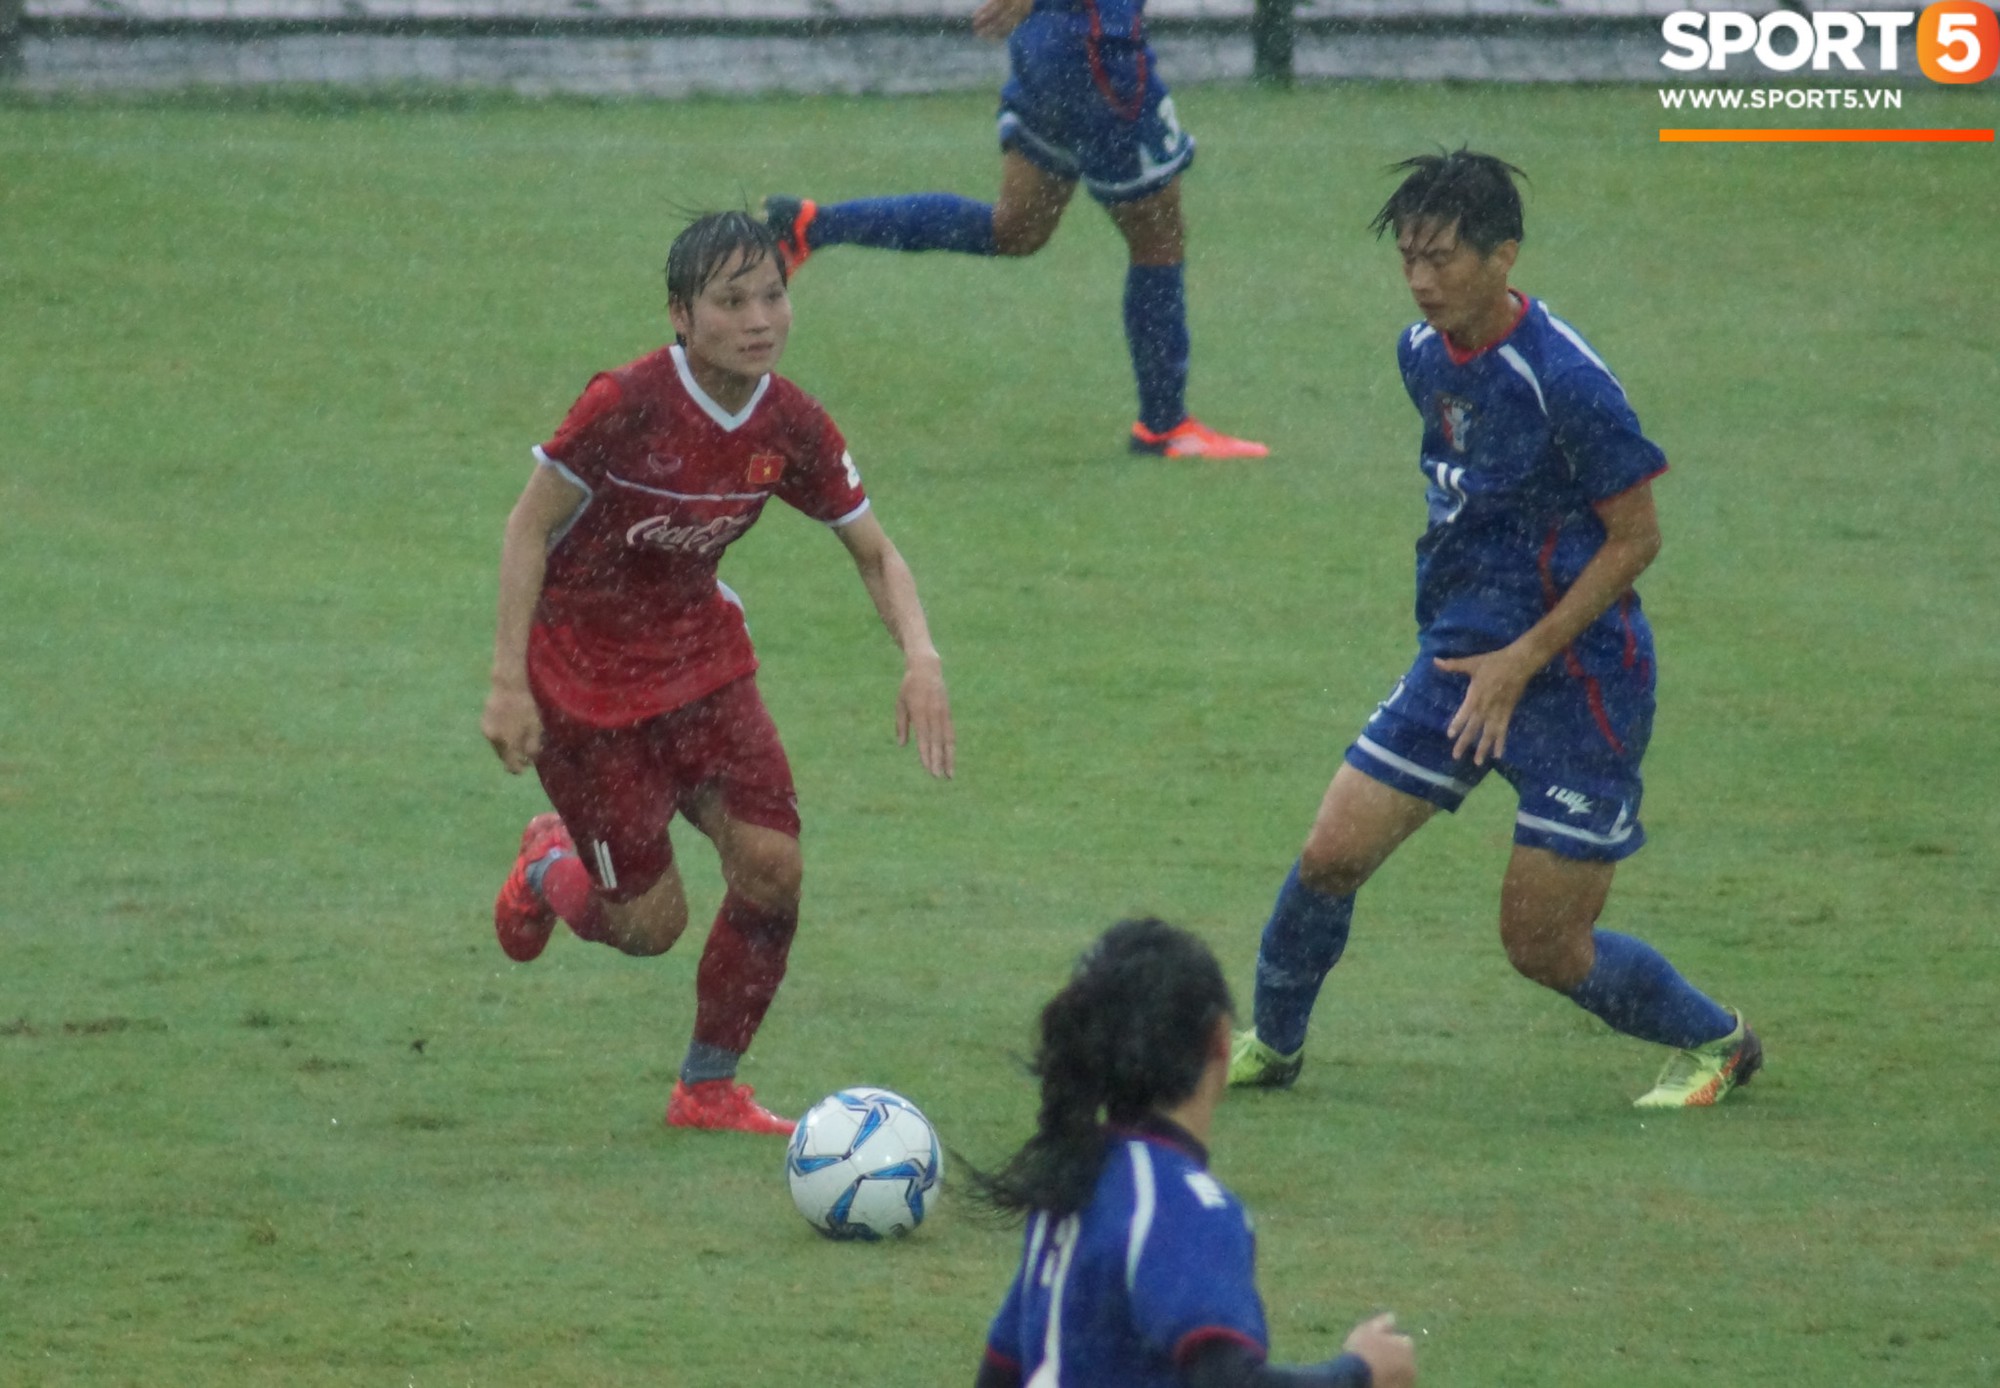 ĐT nữ Việt Nam đánh bại Đài Bắc Trung Hoa 4-0 trong trận tái đấu - Ảnh 3.